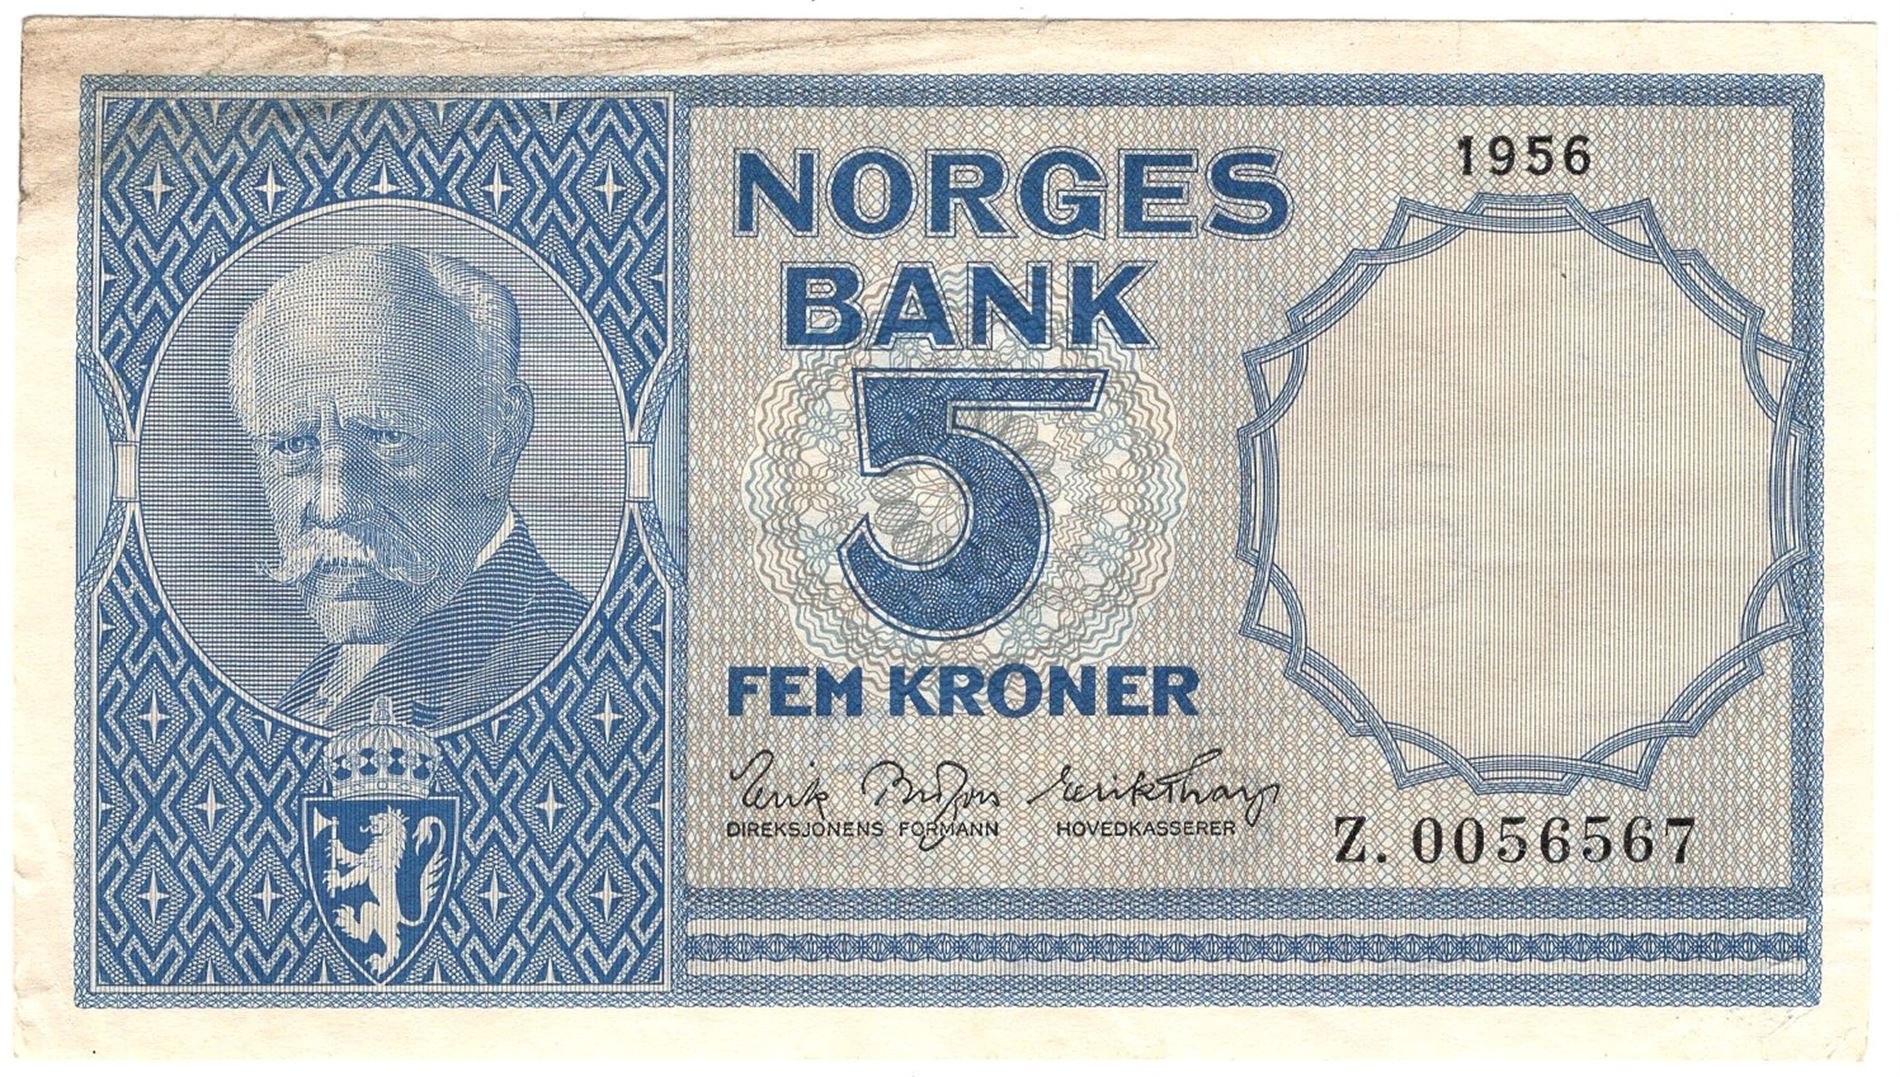 Auksjonarius.no - samleobjekter på auksjon - 5 kroner 1956 Z.0056567  erstatningsseddel. Kv.1+